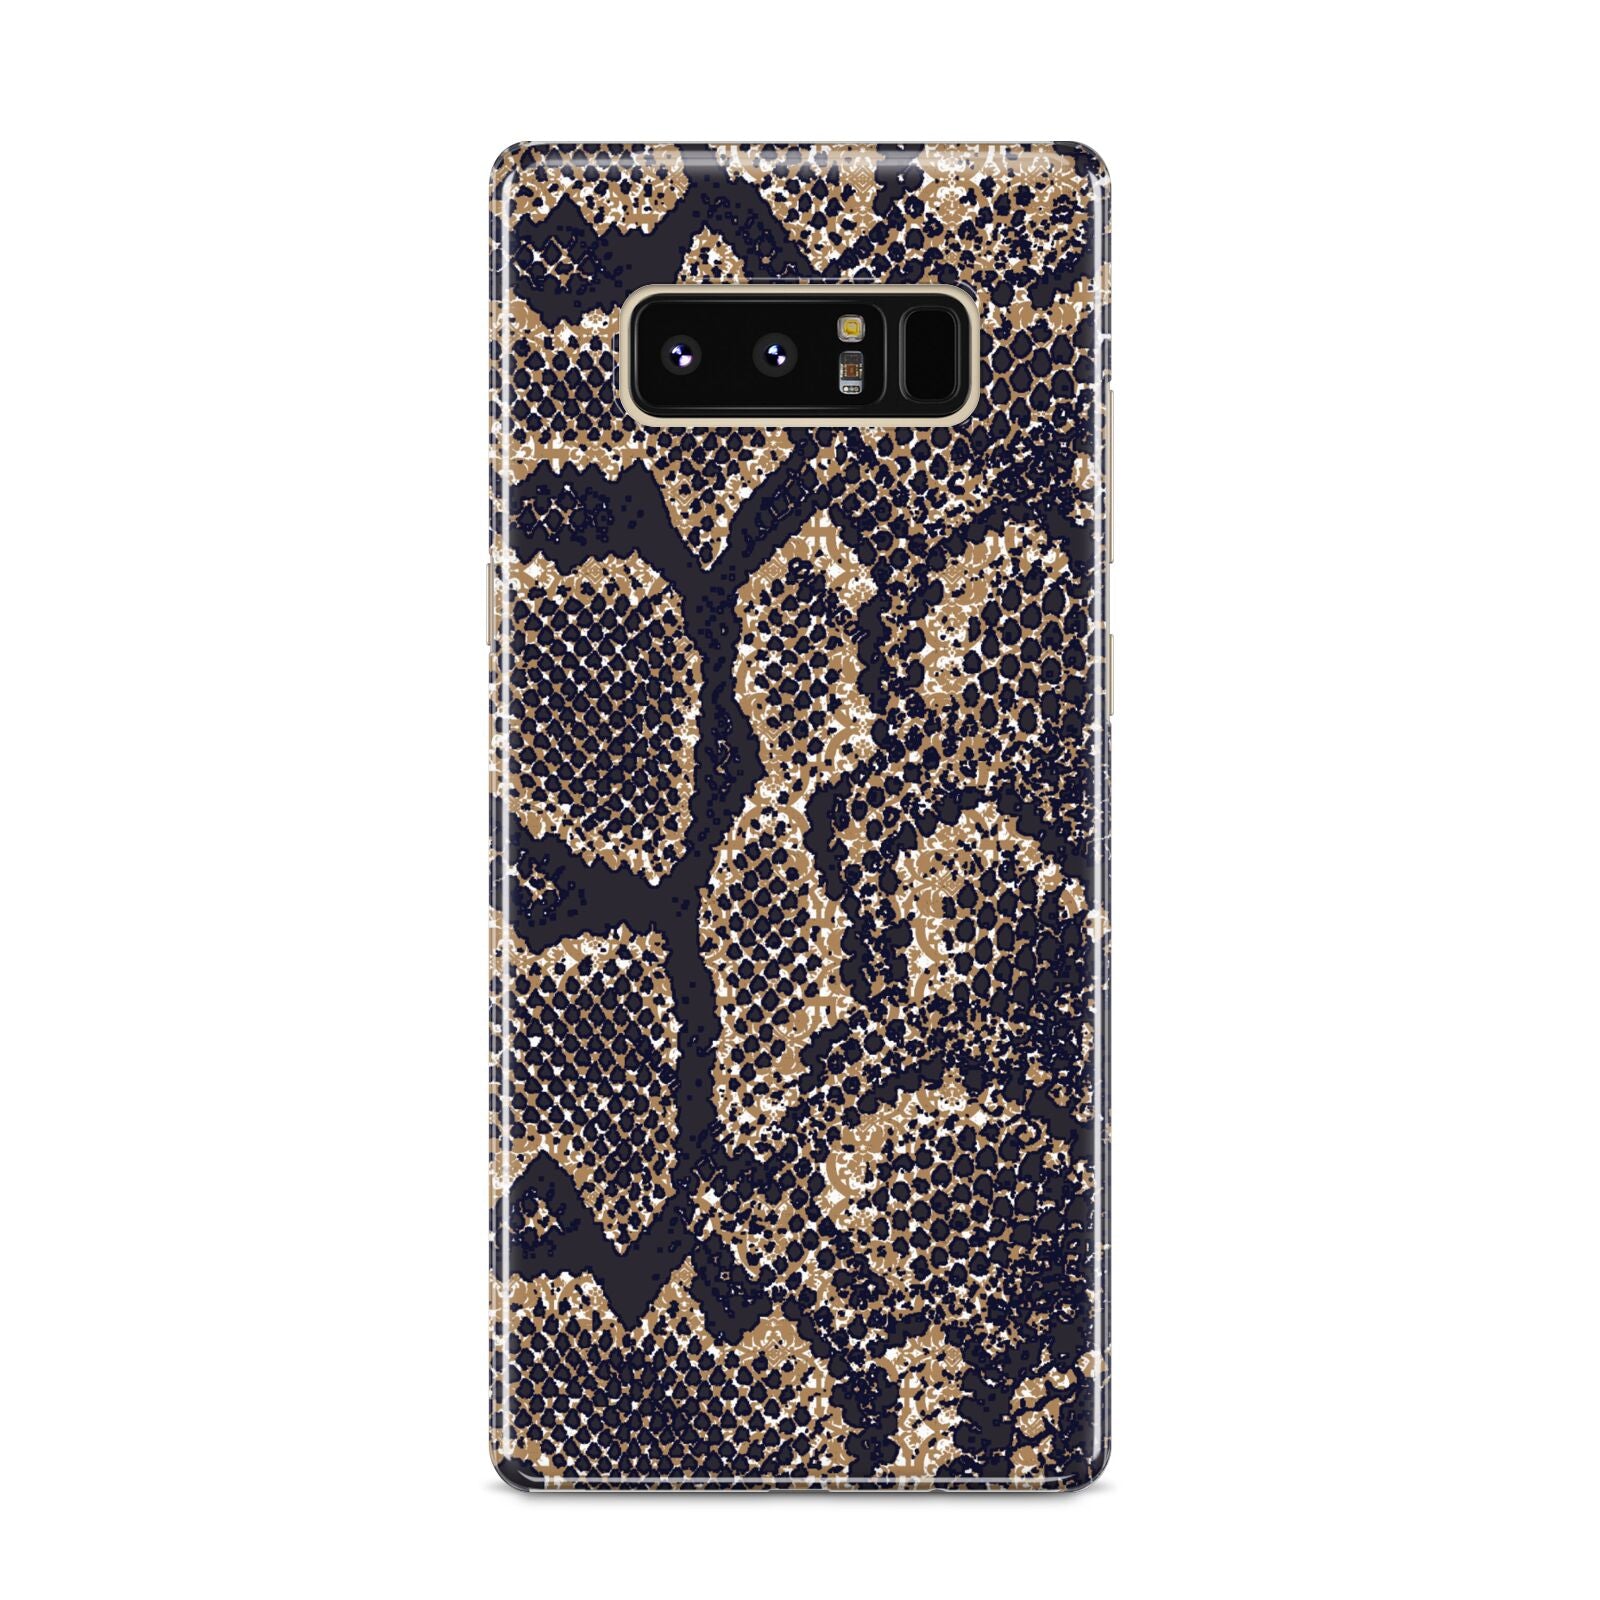 Brown Snakeskin Samsung Galaxy S8 Case